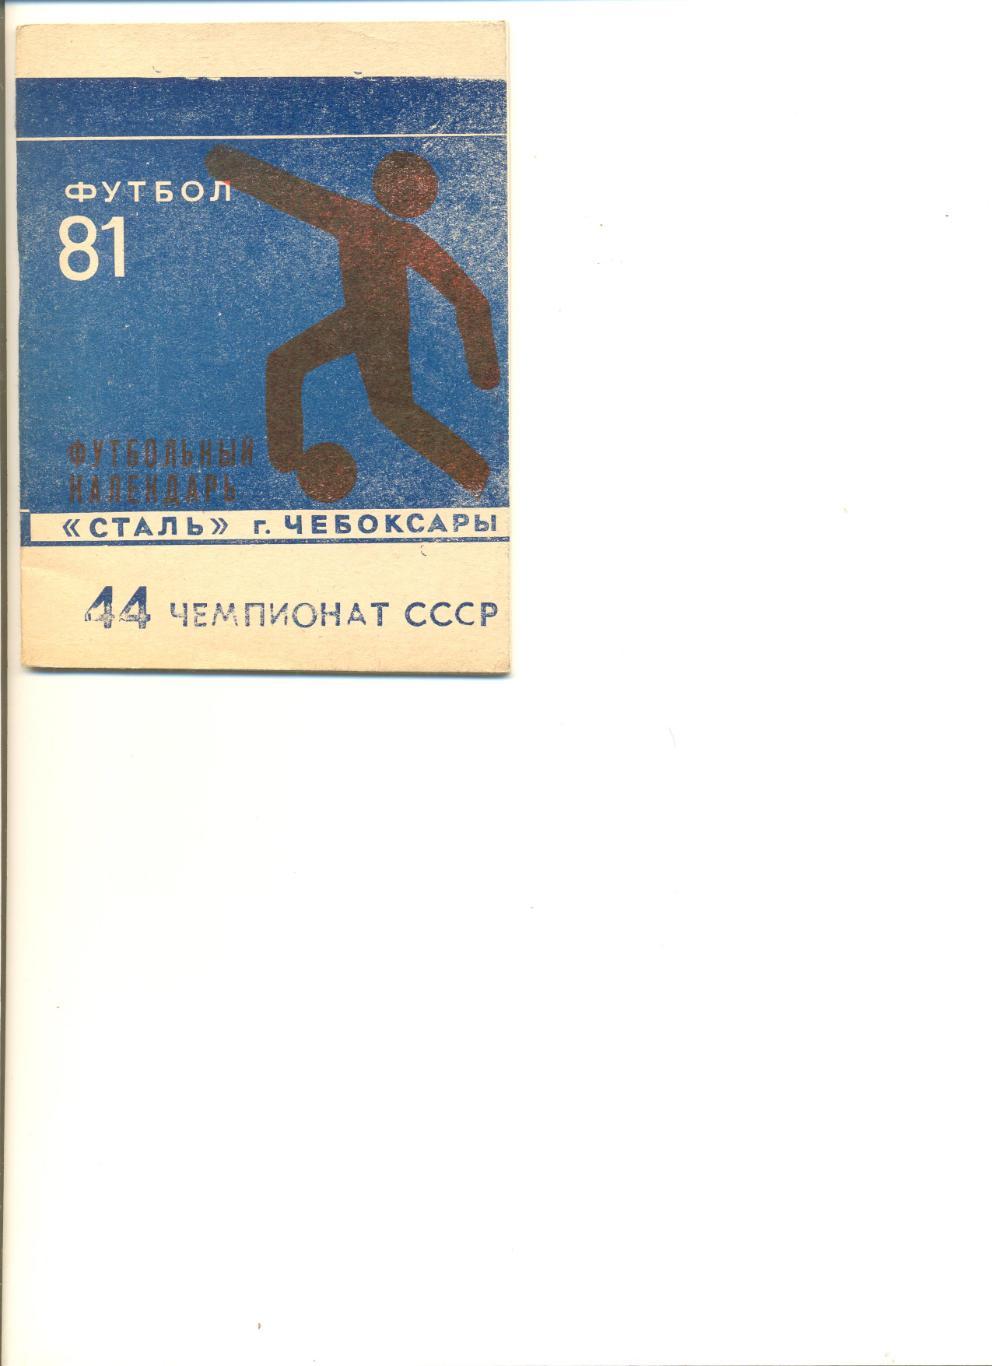 Календарь - справочник Сталь Чебоксары - 1981 г.